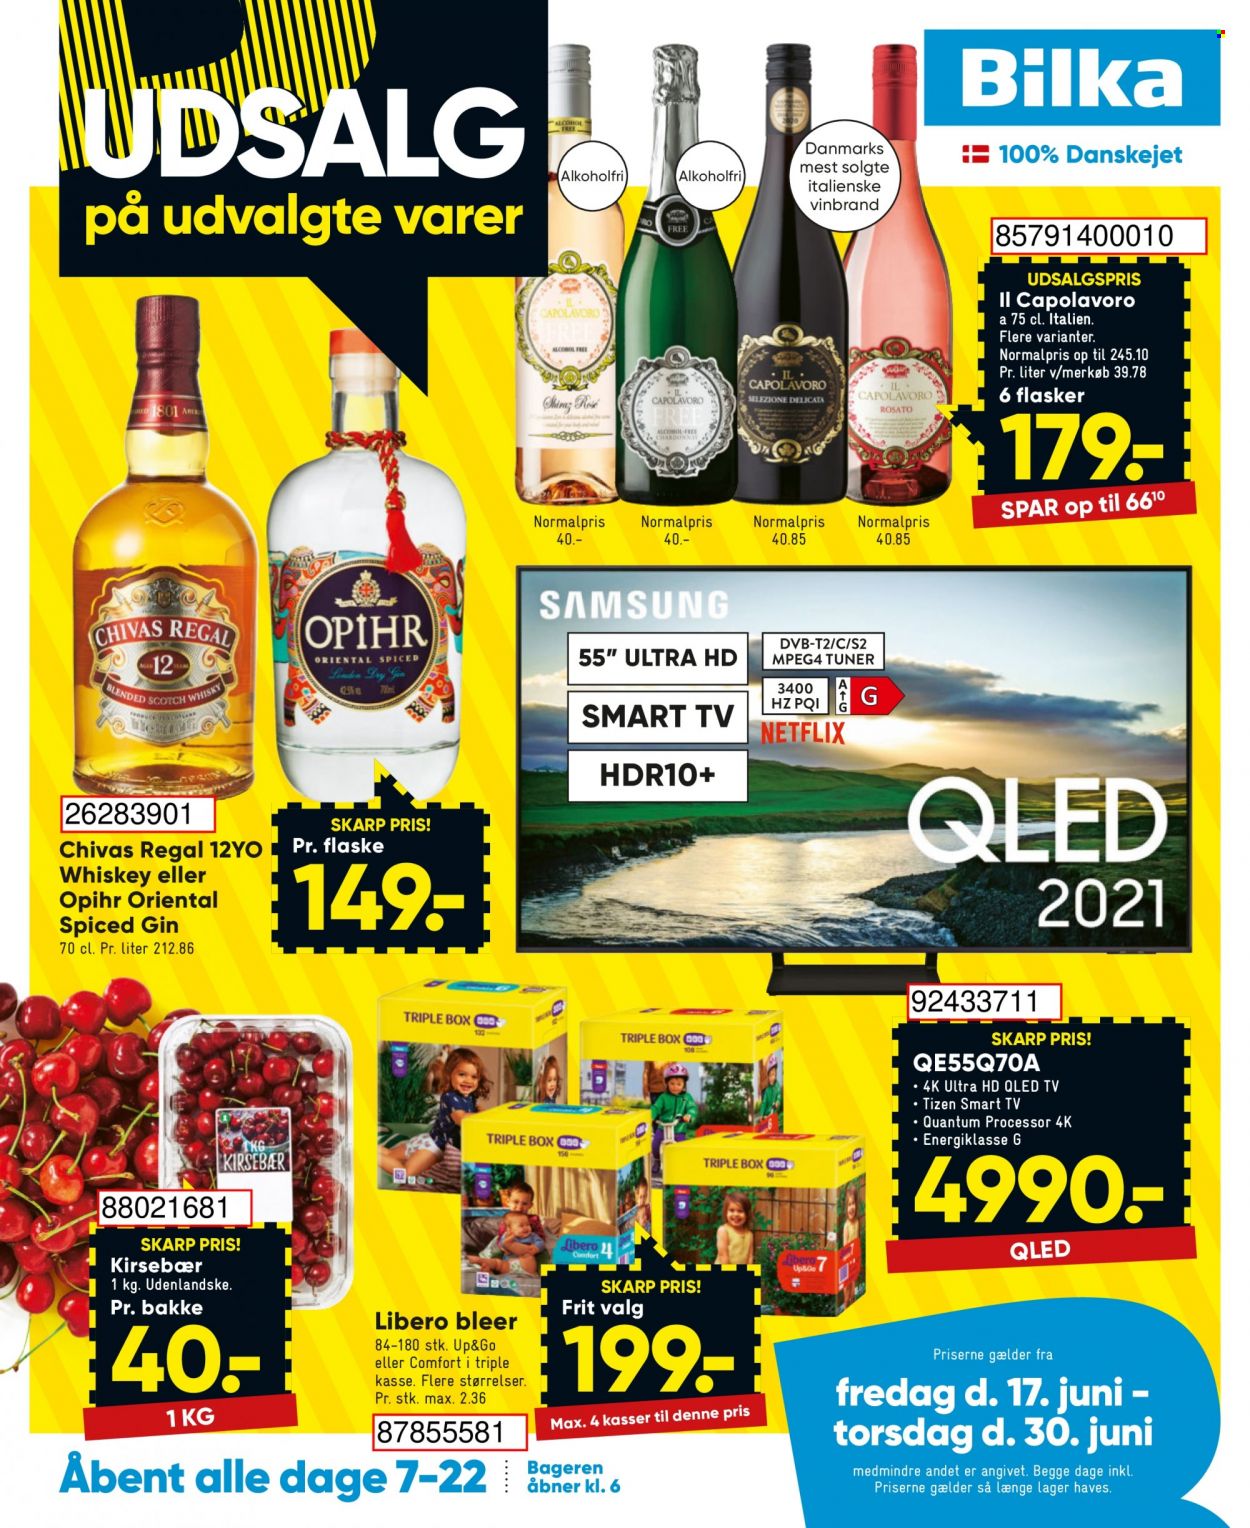 thumbnail - Bilka tilbud  - 17.6.2022 - 30.6.2022 - tilbudsprodukter - kirsebær, QLED TV, Smart TV, Il Capolavoro, gin, whisky, bleer, Libero. Side 1.